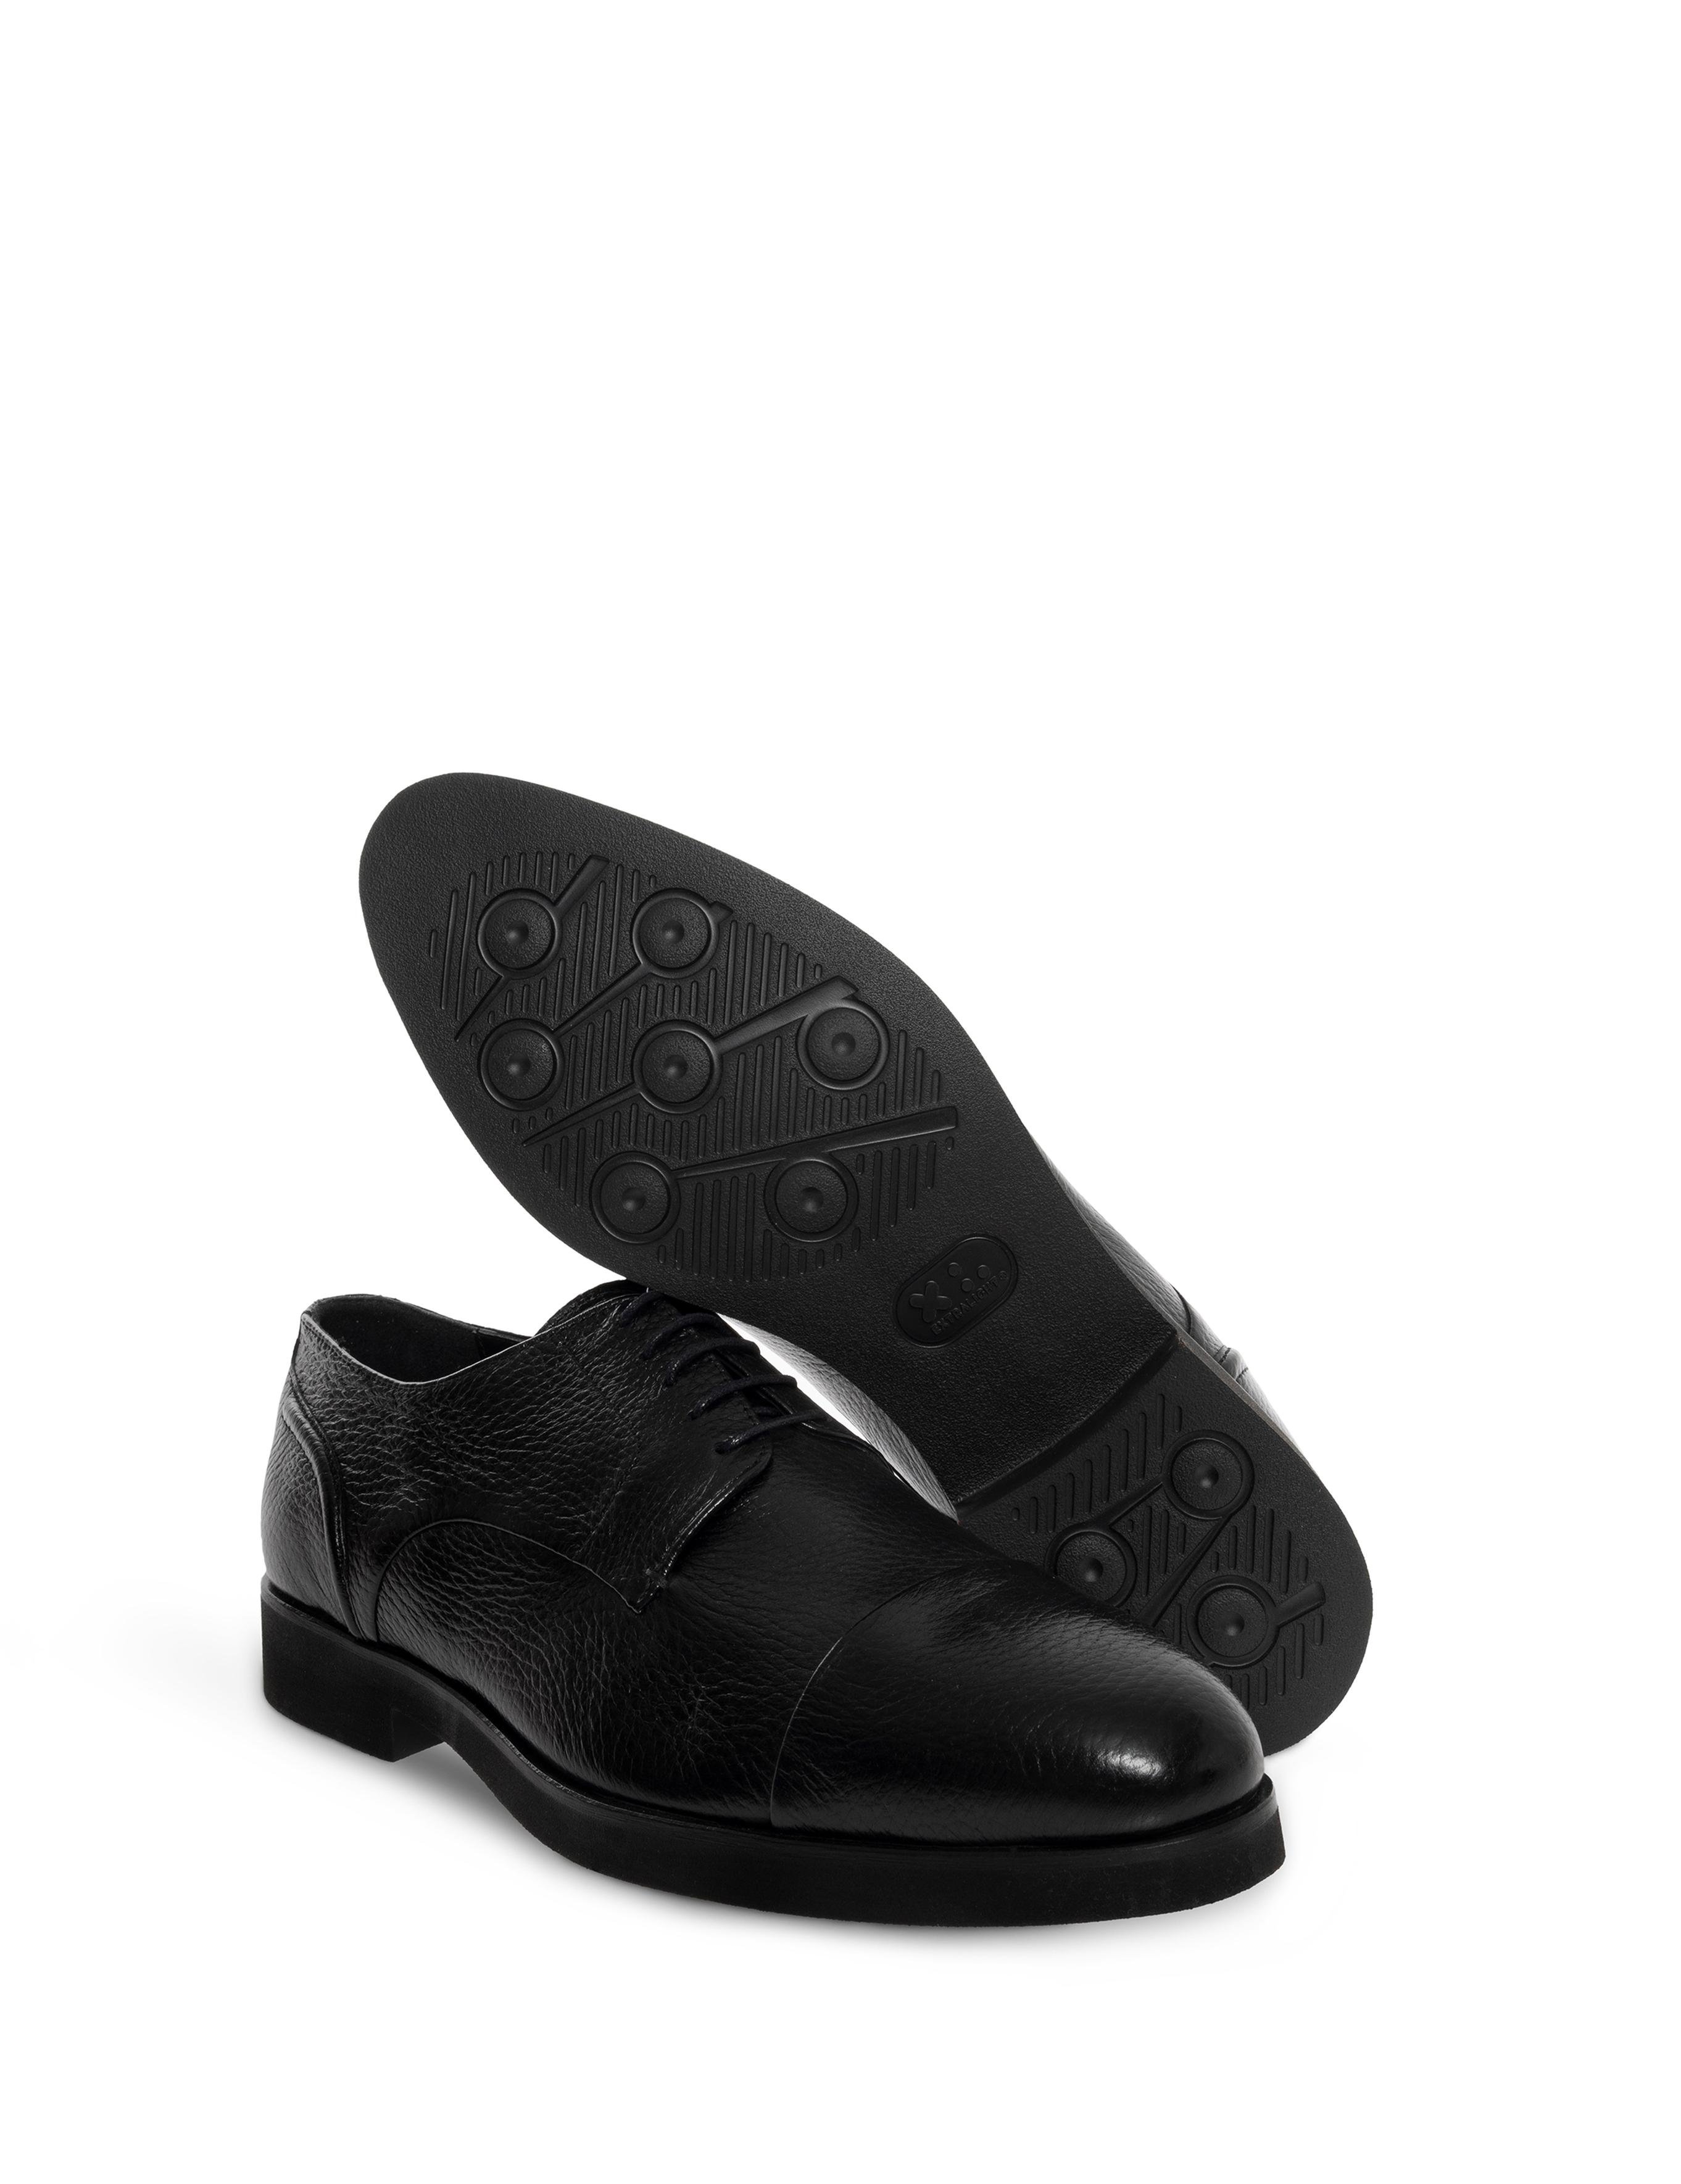 Klasik Siyah Ayakkabı